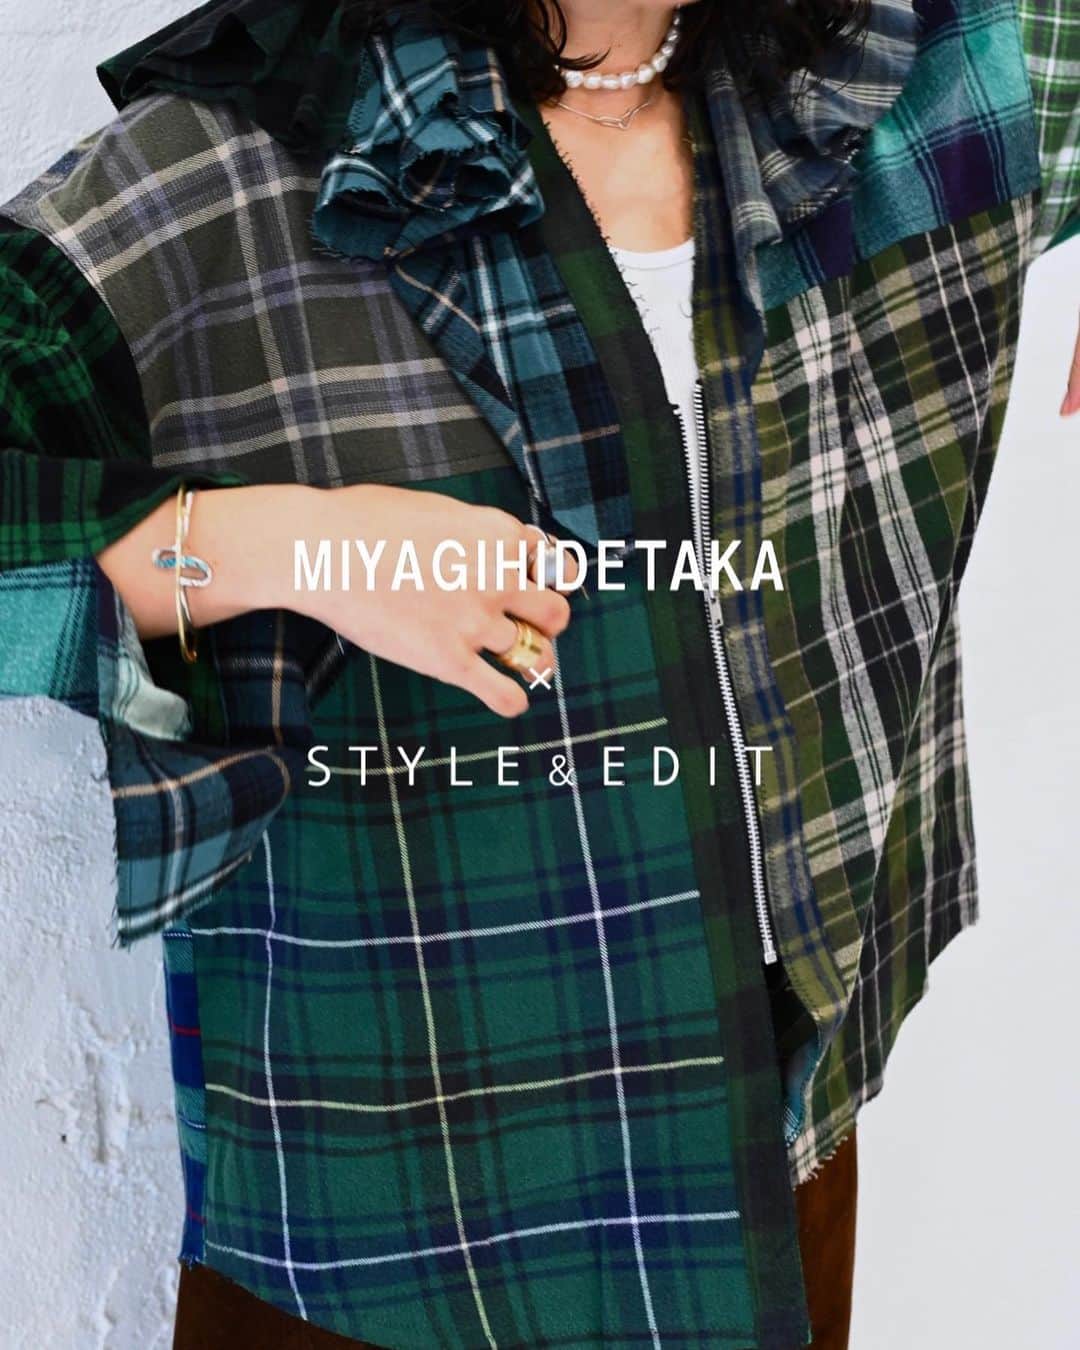 STYLE & EDIT officialのインスタグラム：「1/18(wed)Release  MIYAGIHIDETAKA × STYLE&EDIT  シーズンを設けることなく自身が着たいモノ、作りたいモノを不定期に発表していくMIYAGIHIDETAKA @miyagi_hidetaka と初のコラボレーション。   古着のネルシャツを再構築した、フリルが特徴のシャツは、STYLE&EDIT限定のデザインです。 ネルシャツはデザイナー自身が好きな柄・色をピックアップしているため、全て1点もの。 MIYAGIHIDETAKAのリメイク商品の特徴の１つとして古着の生地のロスを出さないようなパターン設計・デザインを意識しており、今回のシャツもまたそこに注力したデザインとなっています。  MIYAGIHIDETAKA × STYLE&EDIT  frilly shirt 41,800円  カラー：BLACK/BLUE/GREEN/BROWN  ■展開店舗：日本橋・新宿・玉川・横浜・大阪・京都 ■オンライン：タカシマヤファッションスクエア　@tfs_fashion_official   ■INSTA LIVE：1月17日(火)19:50 START  ※入荷のカラー・柄は店舗によって異なります。 ※ ※お一人様1点のみお買い上げいただけます。 ※タカシマヤファッションスクエアでは1月17日(火)18時より販売 ※数に限りがございます。品切れの節はご容赦くださいませ。  #styleandedit  #takashimaya  #miyagihidetaka」